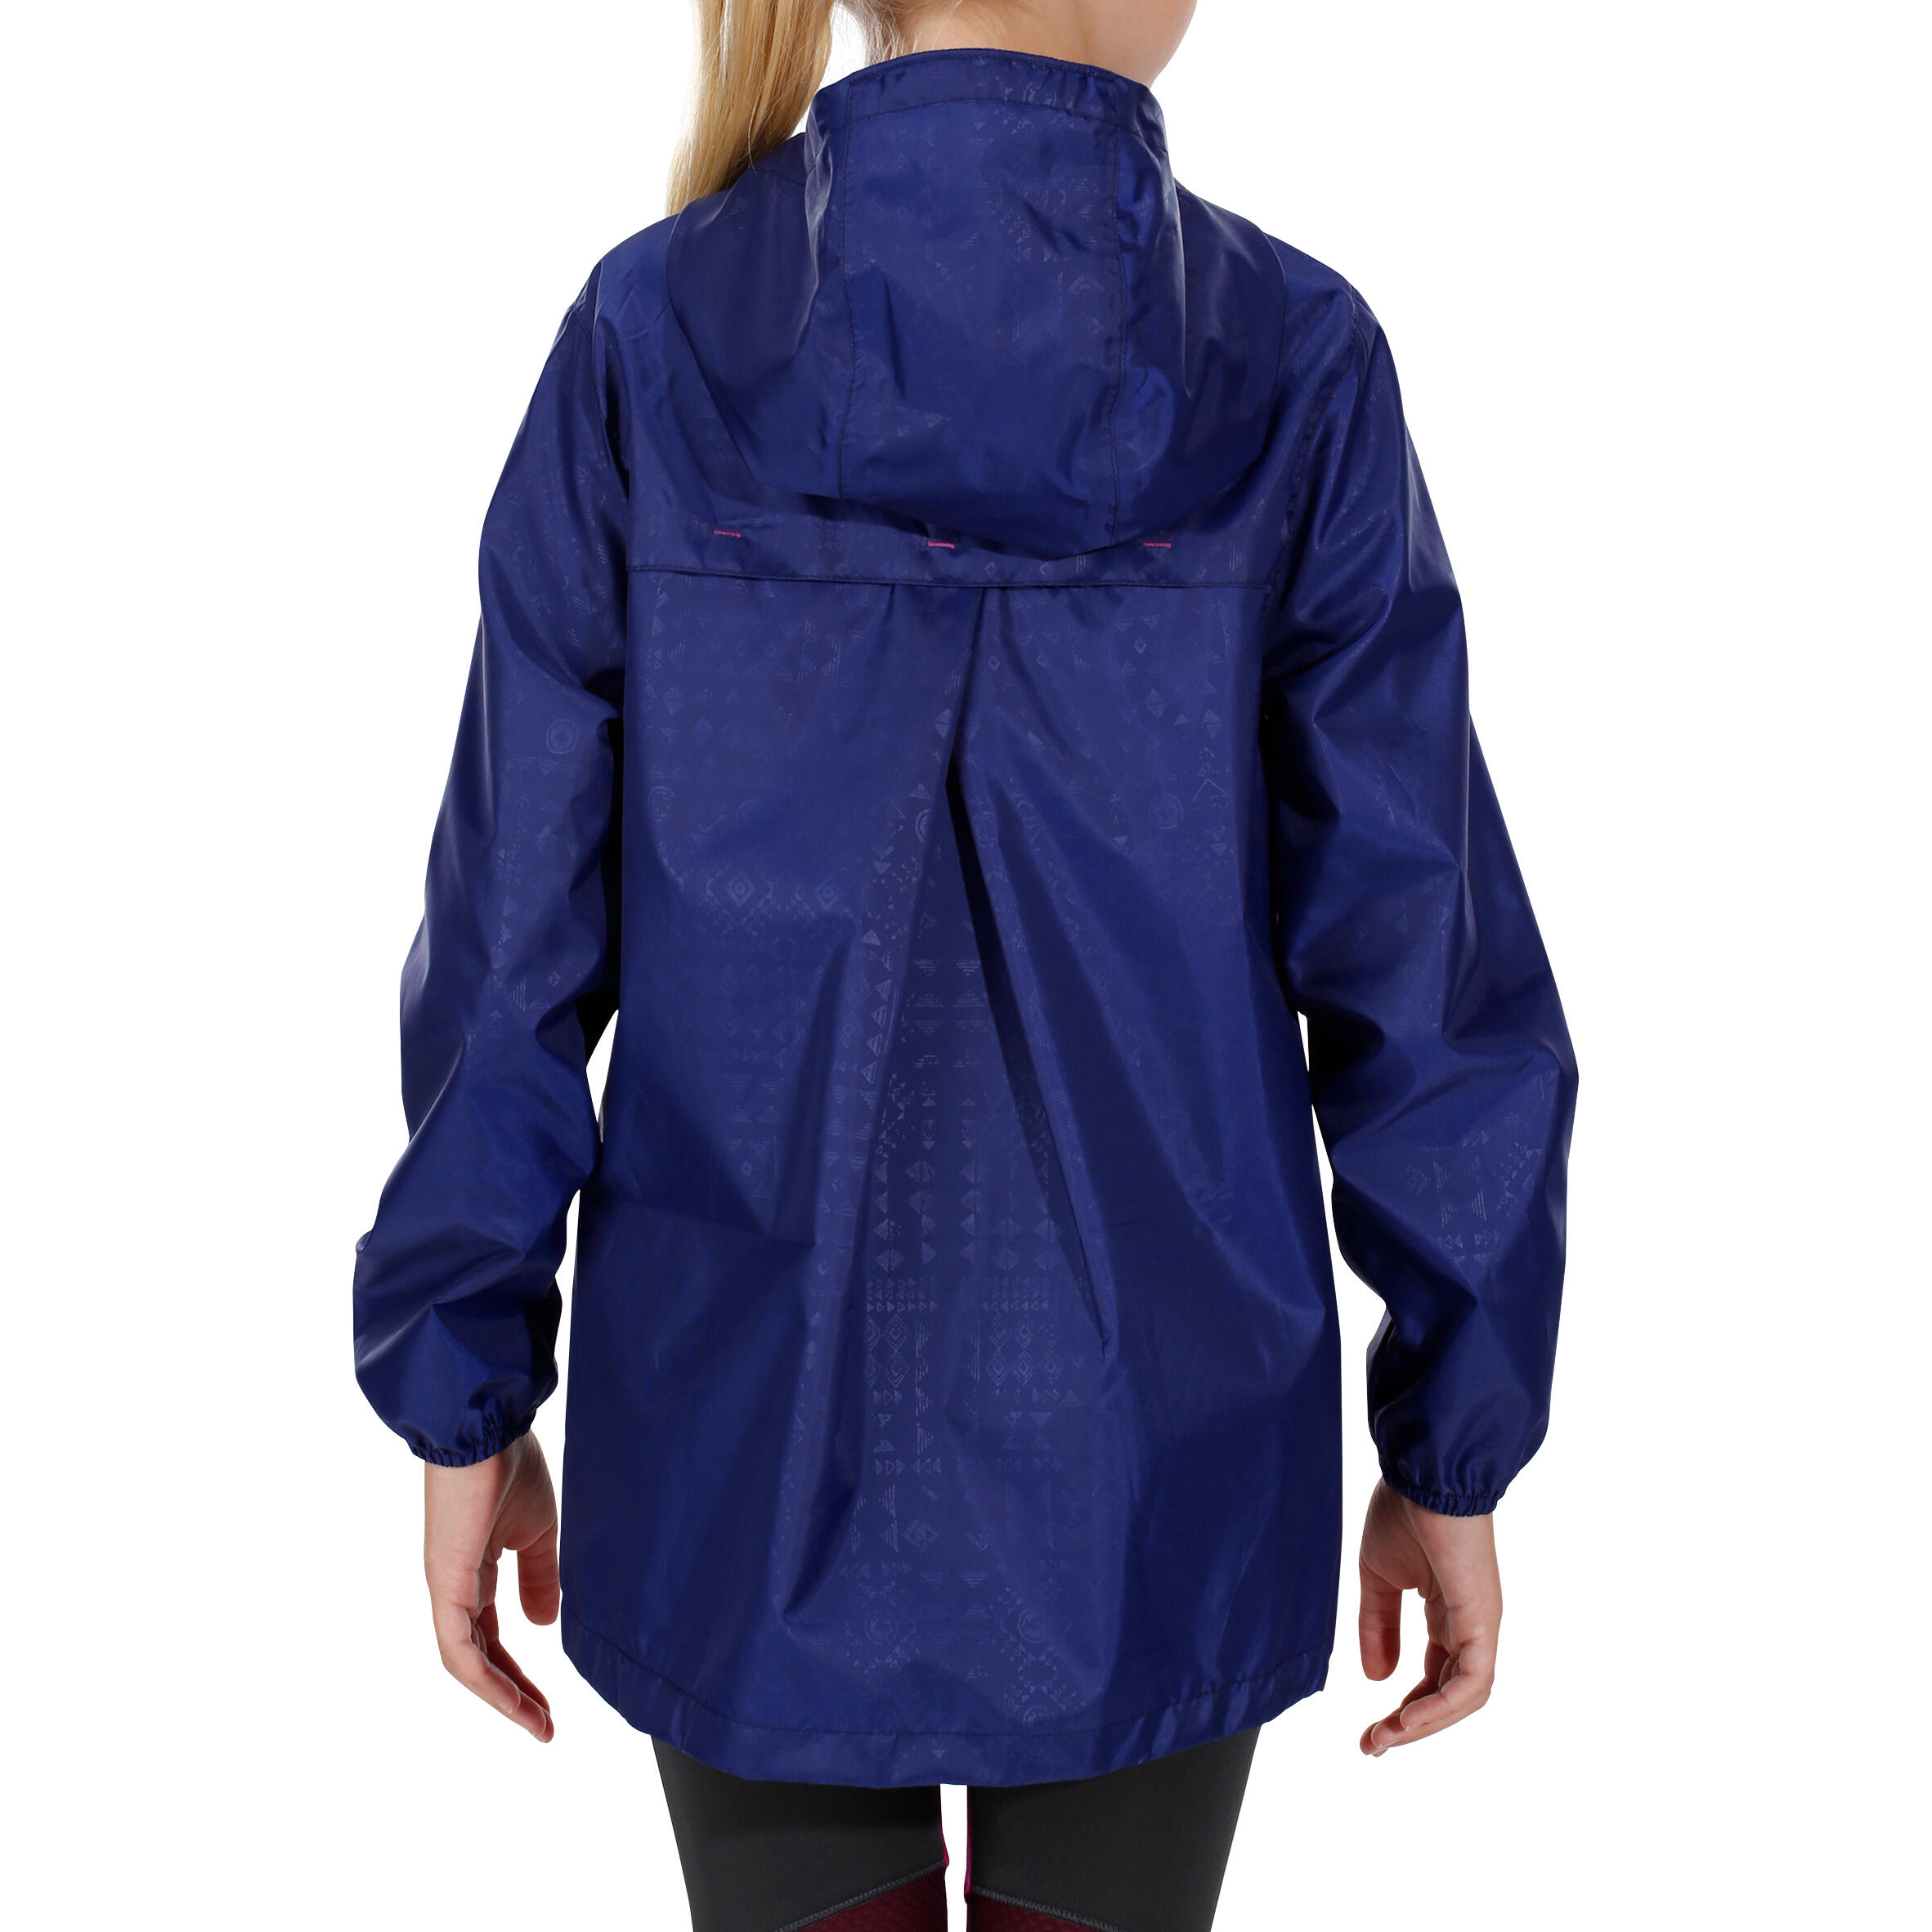 Hike 100 Waterproof Hiking Girl's Jacket - Navy Blue 5/14